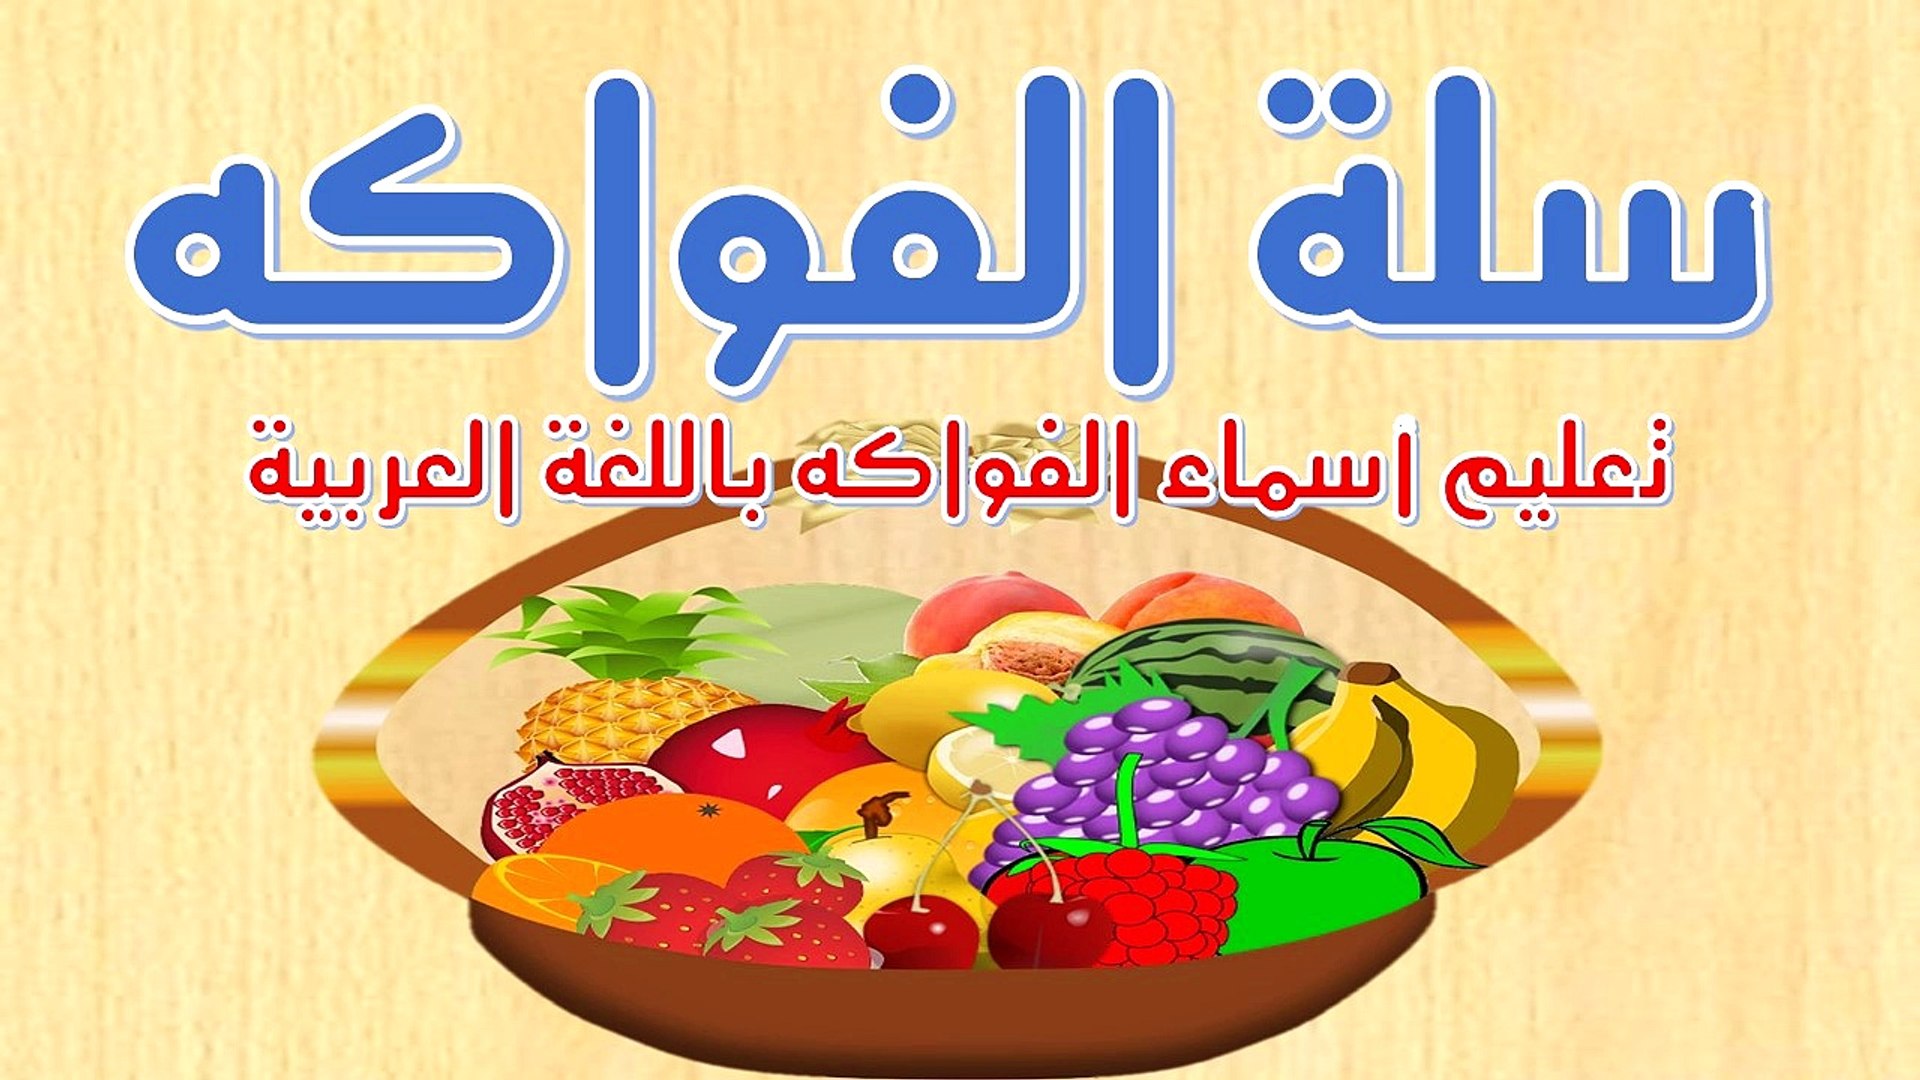 اسماء الفواكه للأطفال الفواكه باللغة العربية فيديو Dailymotion